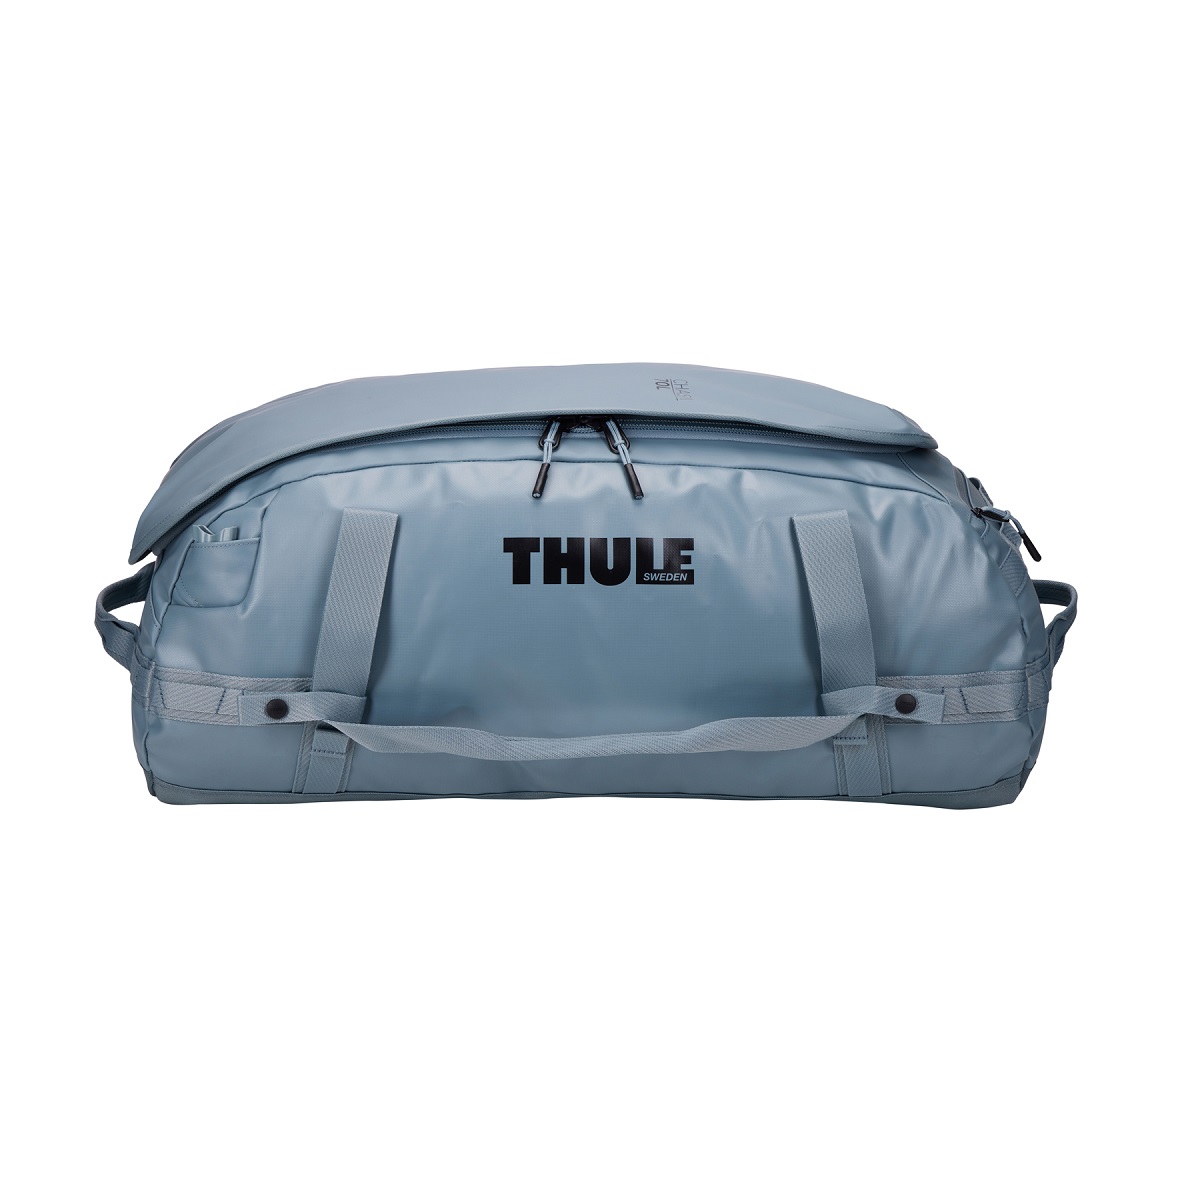 Sportska/putna torba i ruksak 2u1 Thule Chasm 70 L - sivoplava